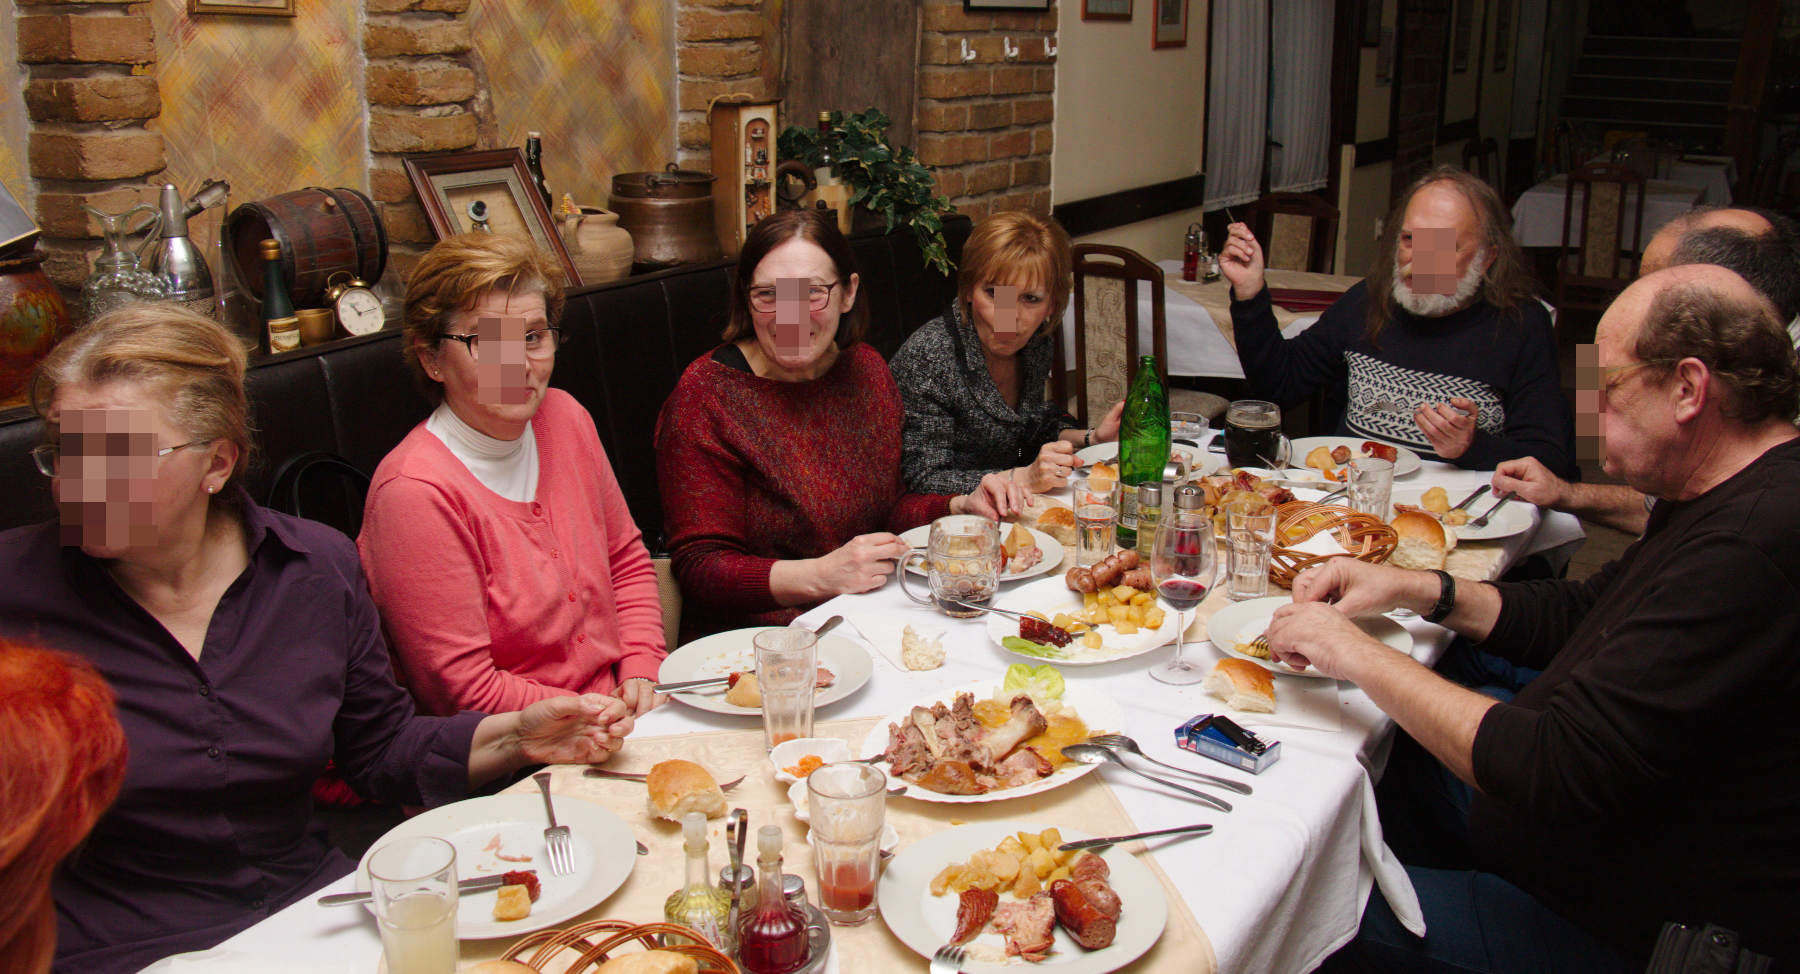 Милица, Мима, Биља, Драгана, ја, Сташа (заклоњен), Баки. Риђокоса доле лево је Рајка.